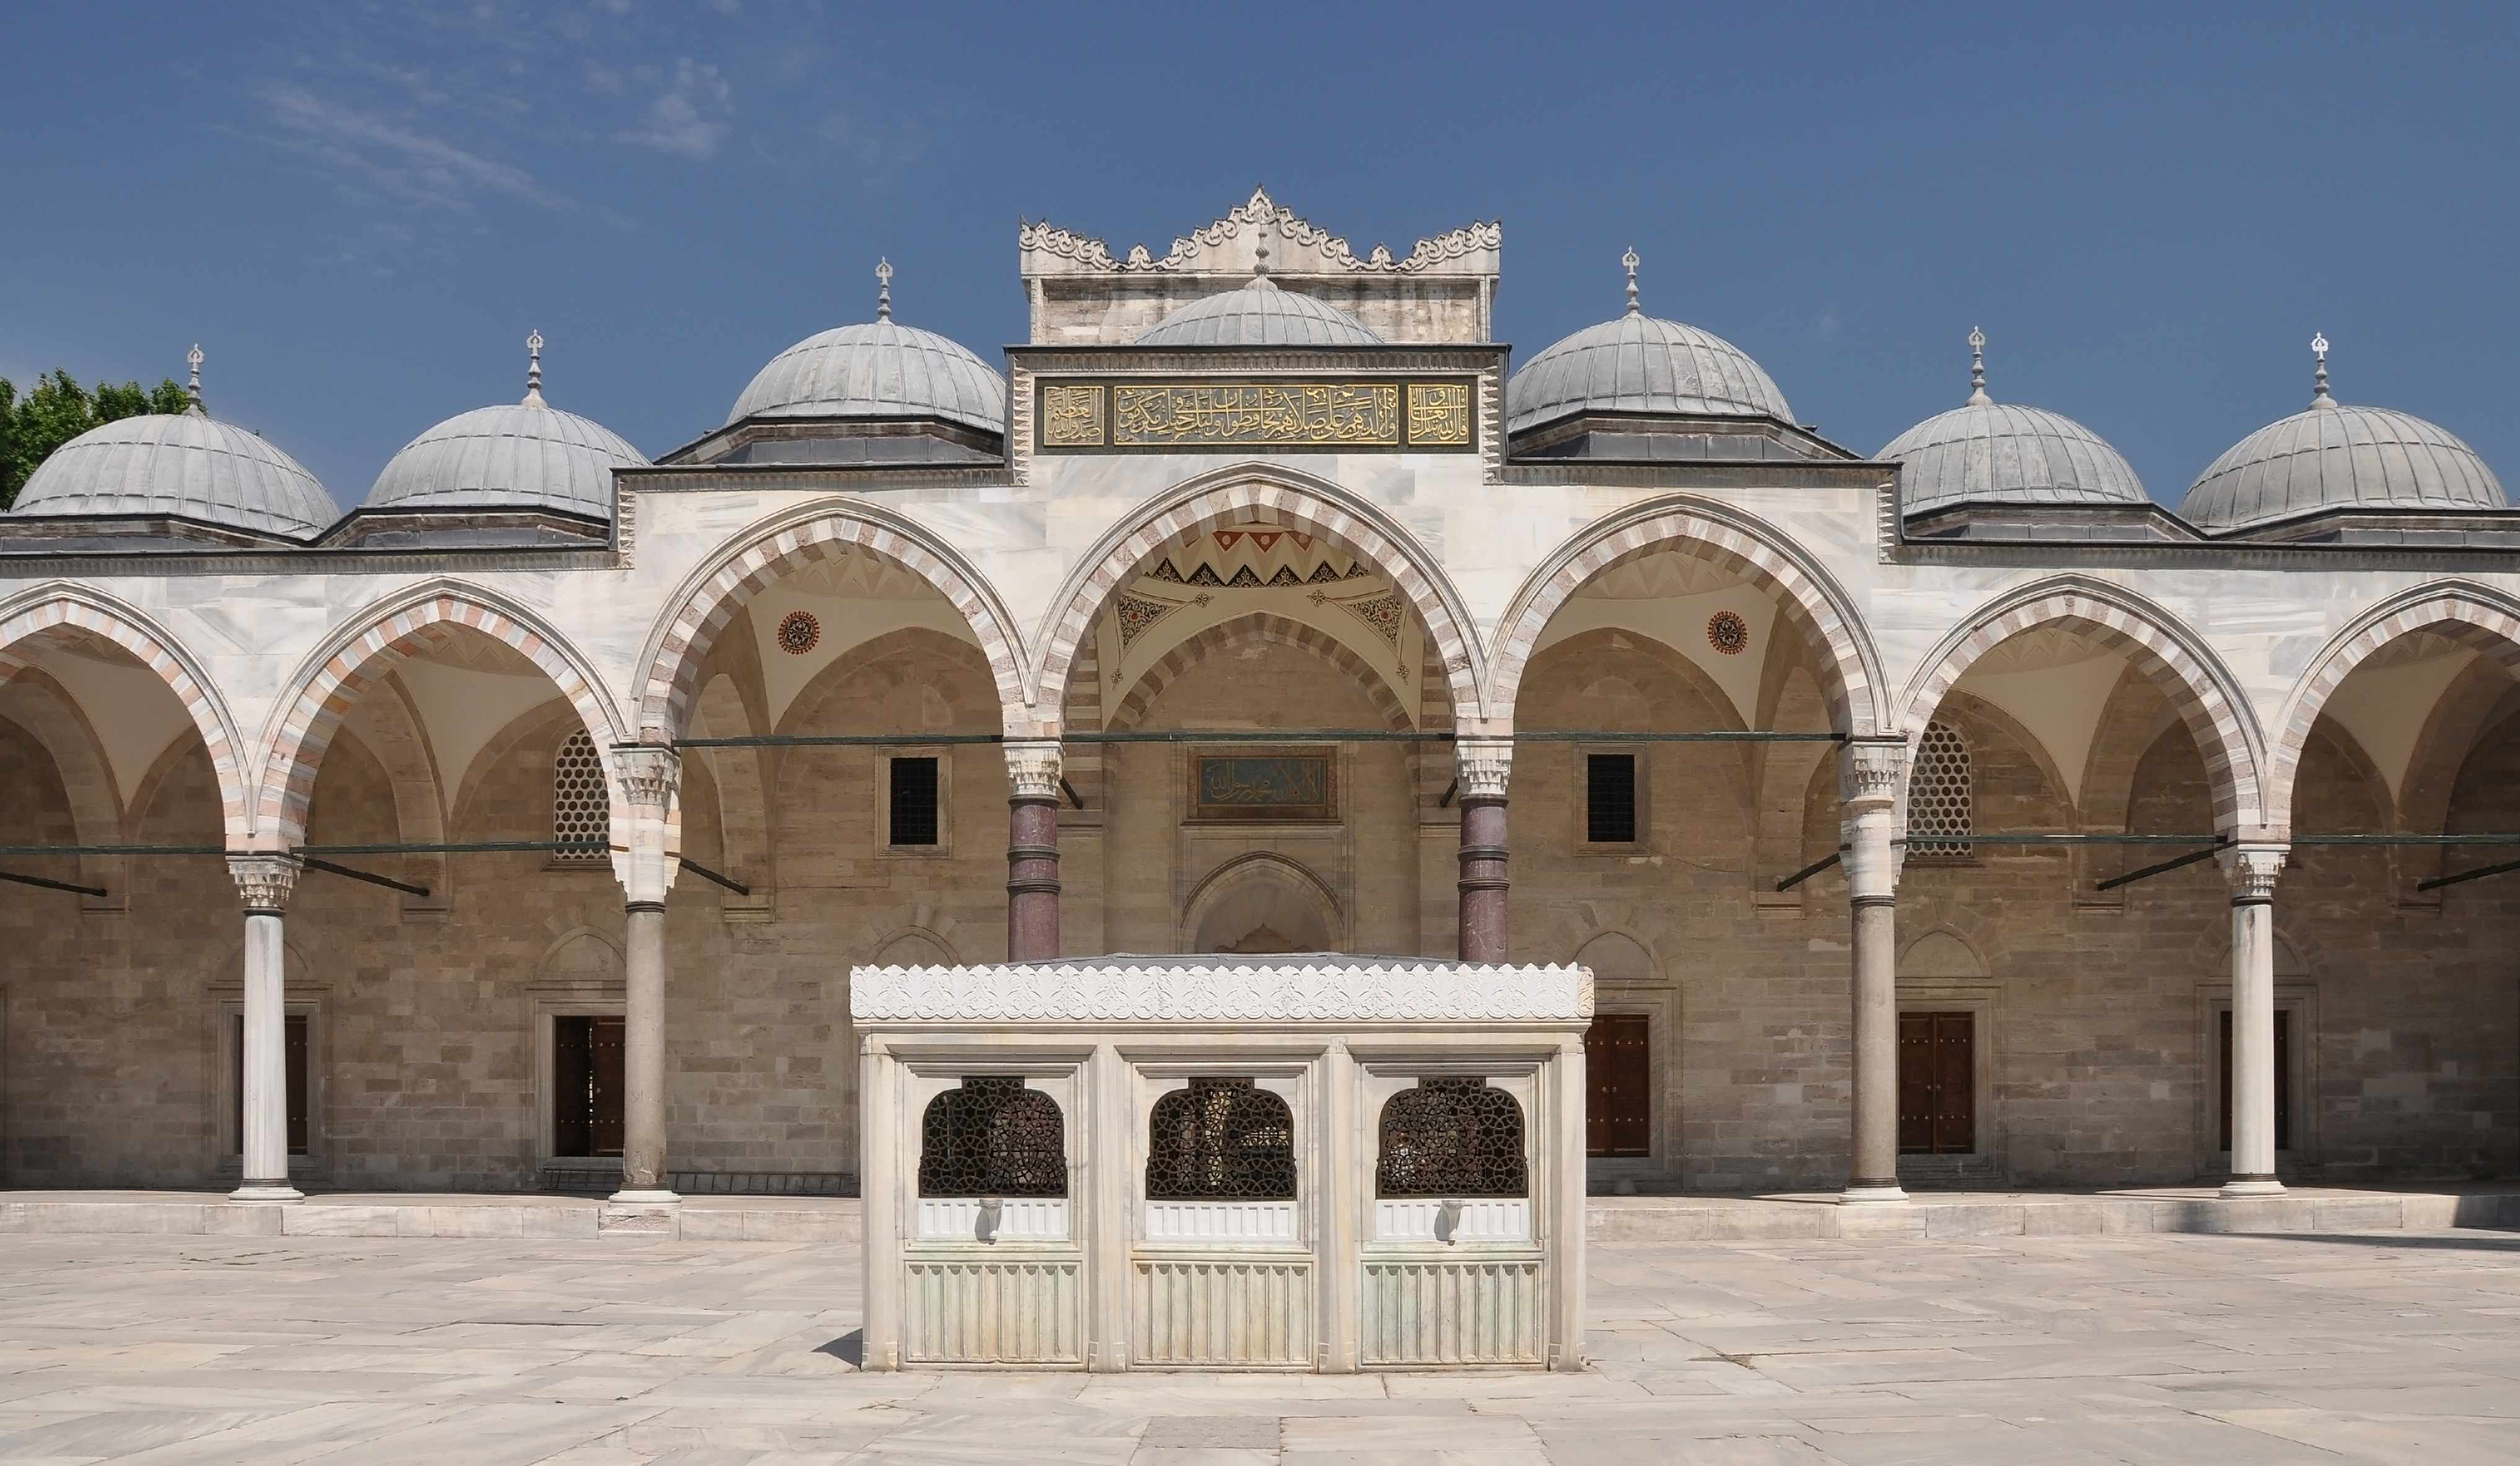 Courtyard of the Süleymaniye Mosque in Istanbul, Turkey 001